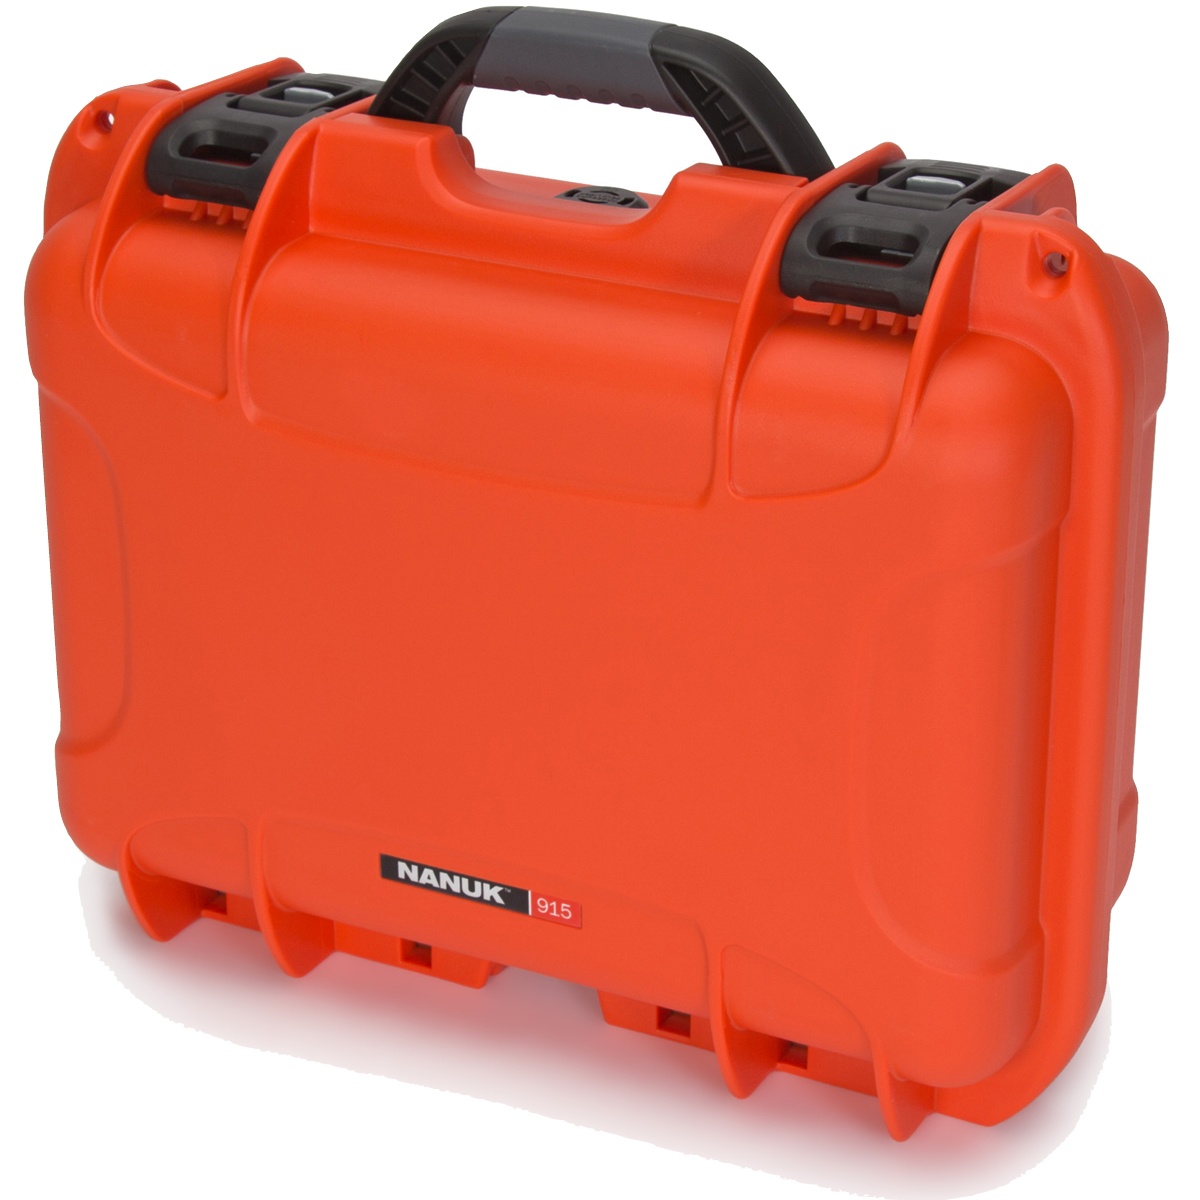 Nanuk Koffer 915 mit Schaumstoffeinlage Orange